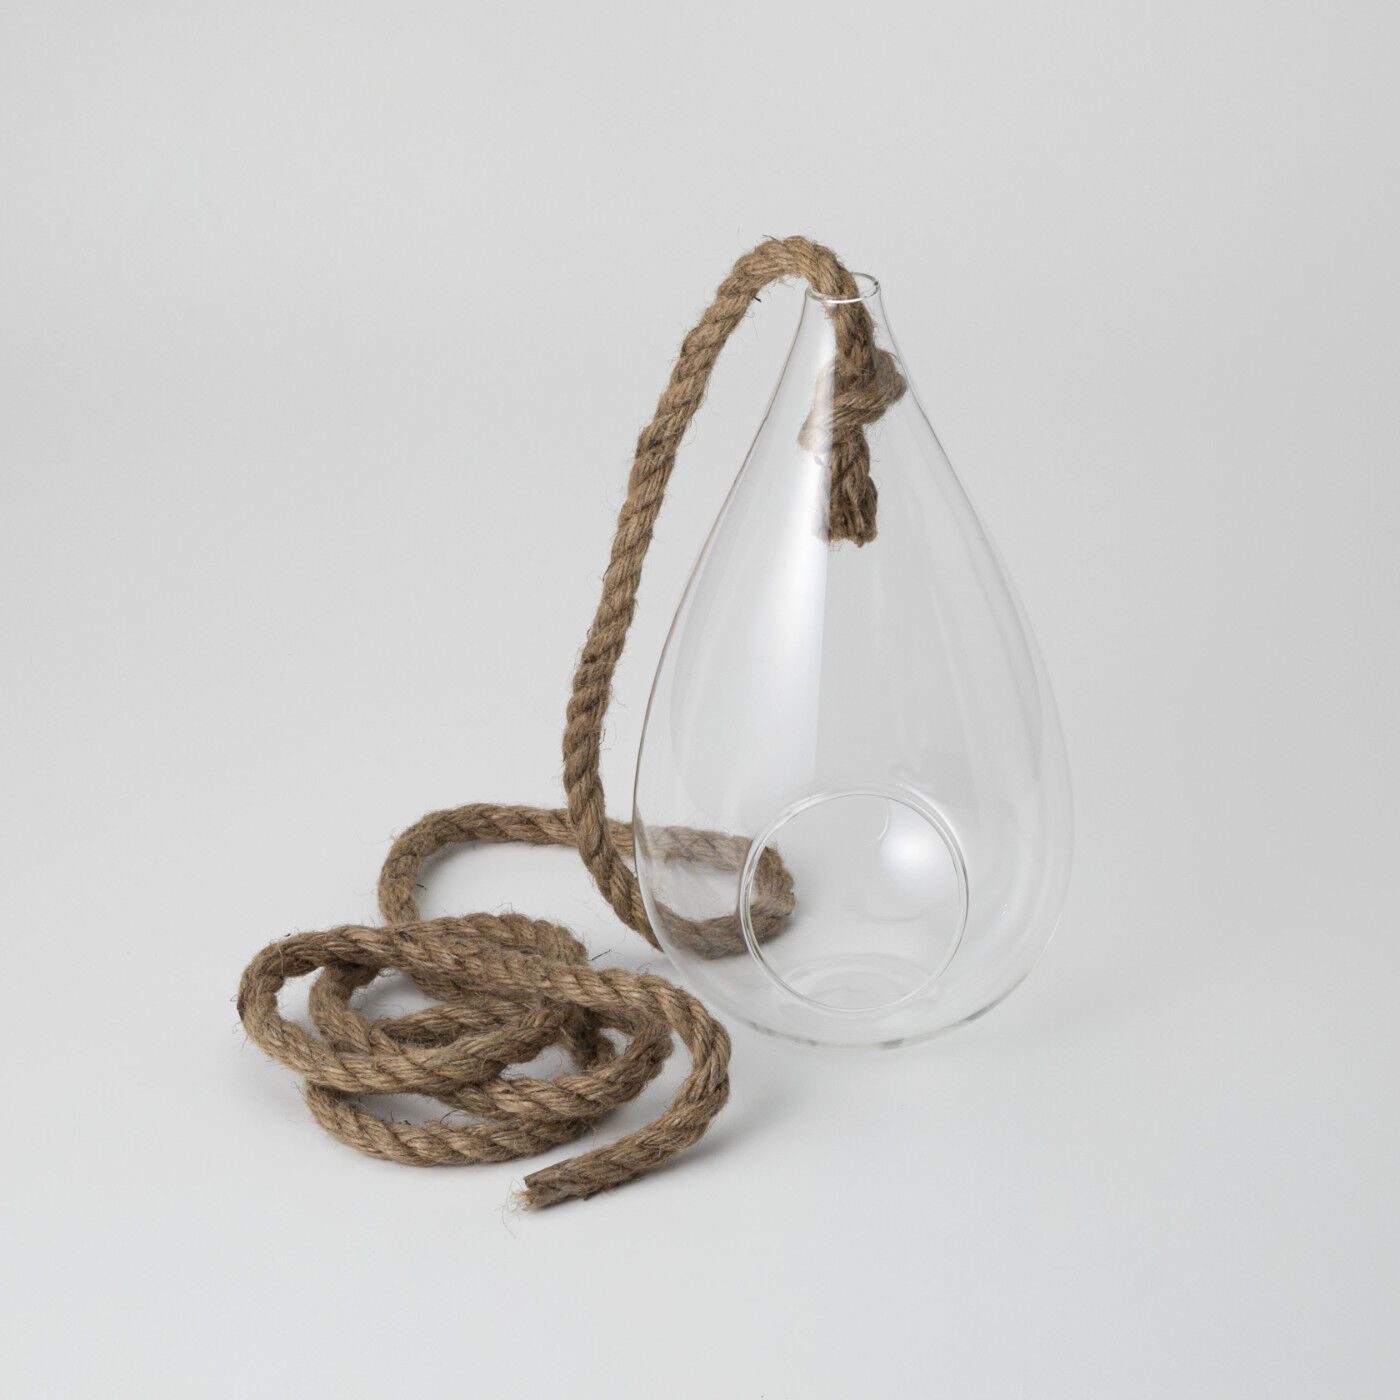 SeeMONO|浮遊するインテリア　ガラスのハンギングベース|ガラスとロープの素材感がシンプル空間に相性〇。